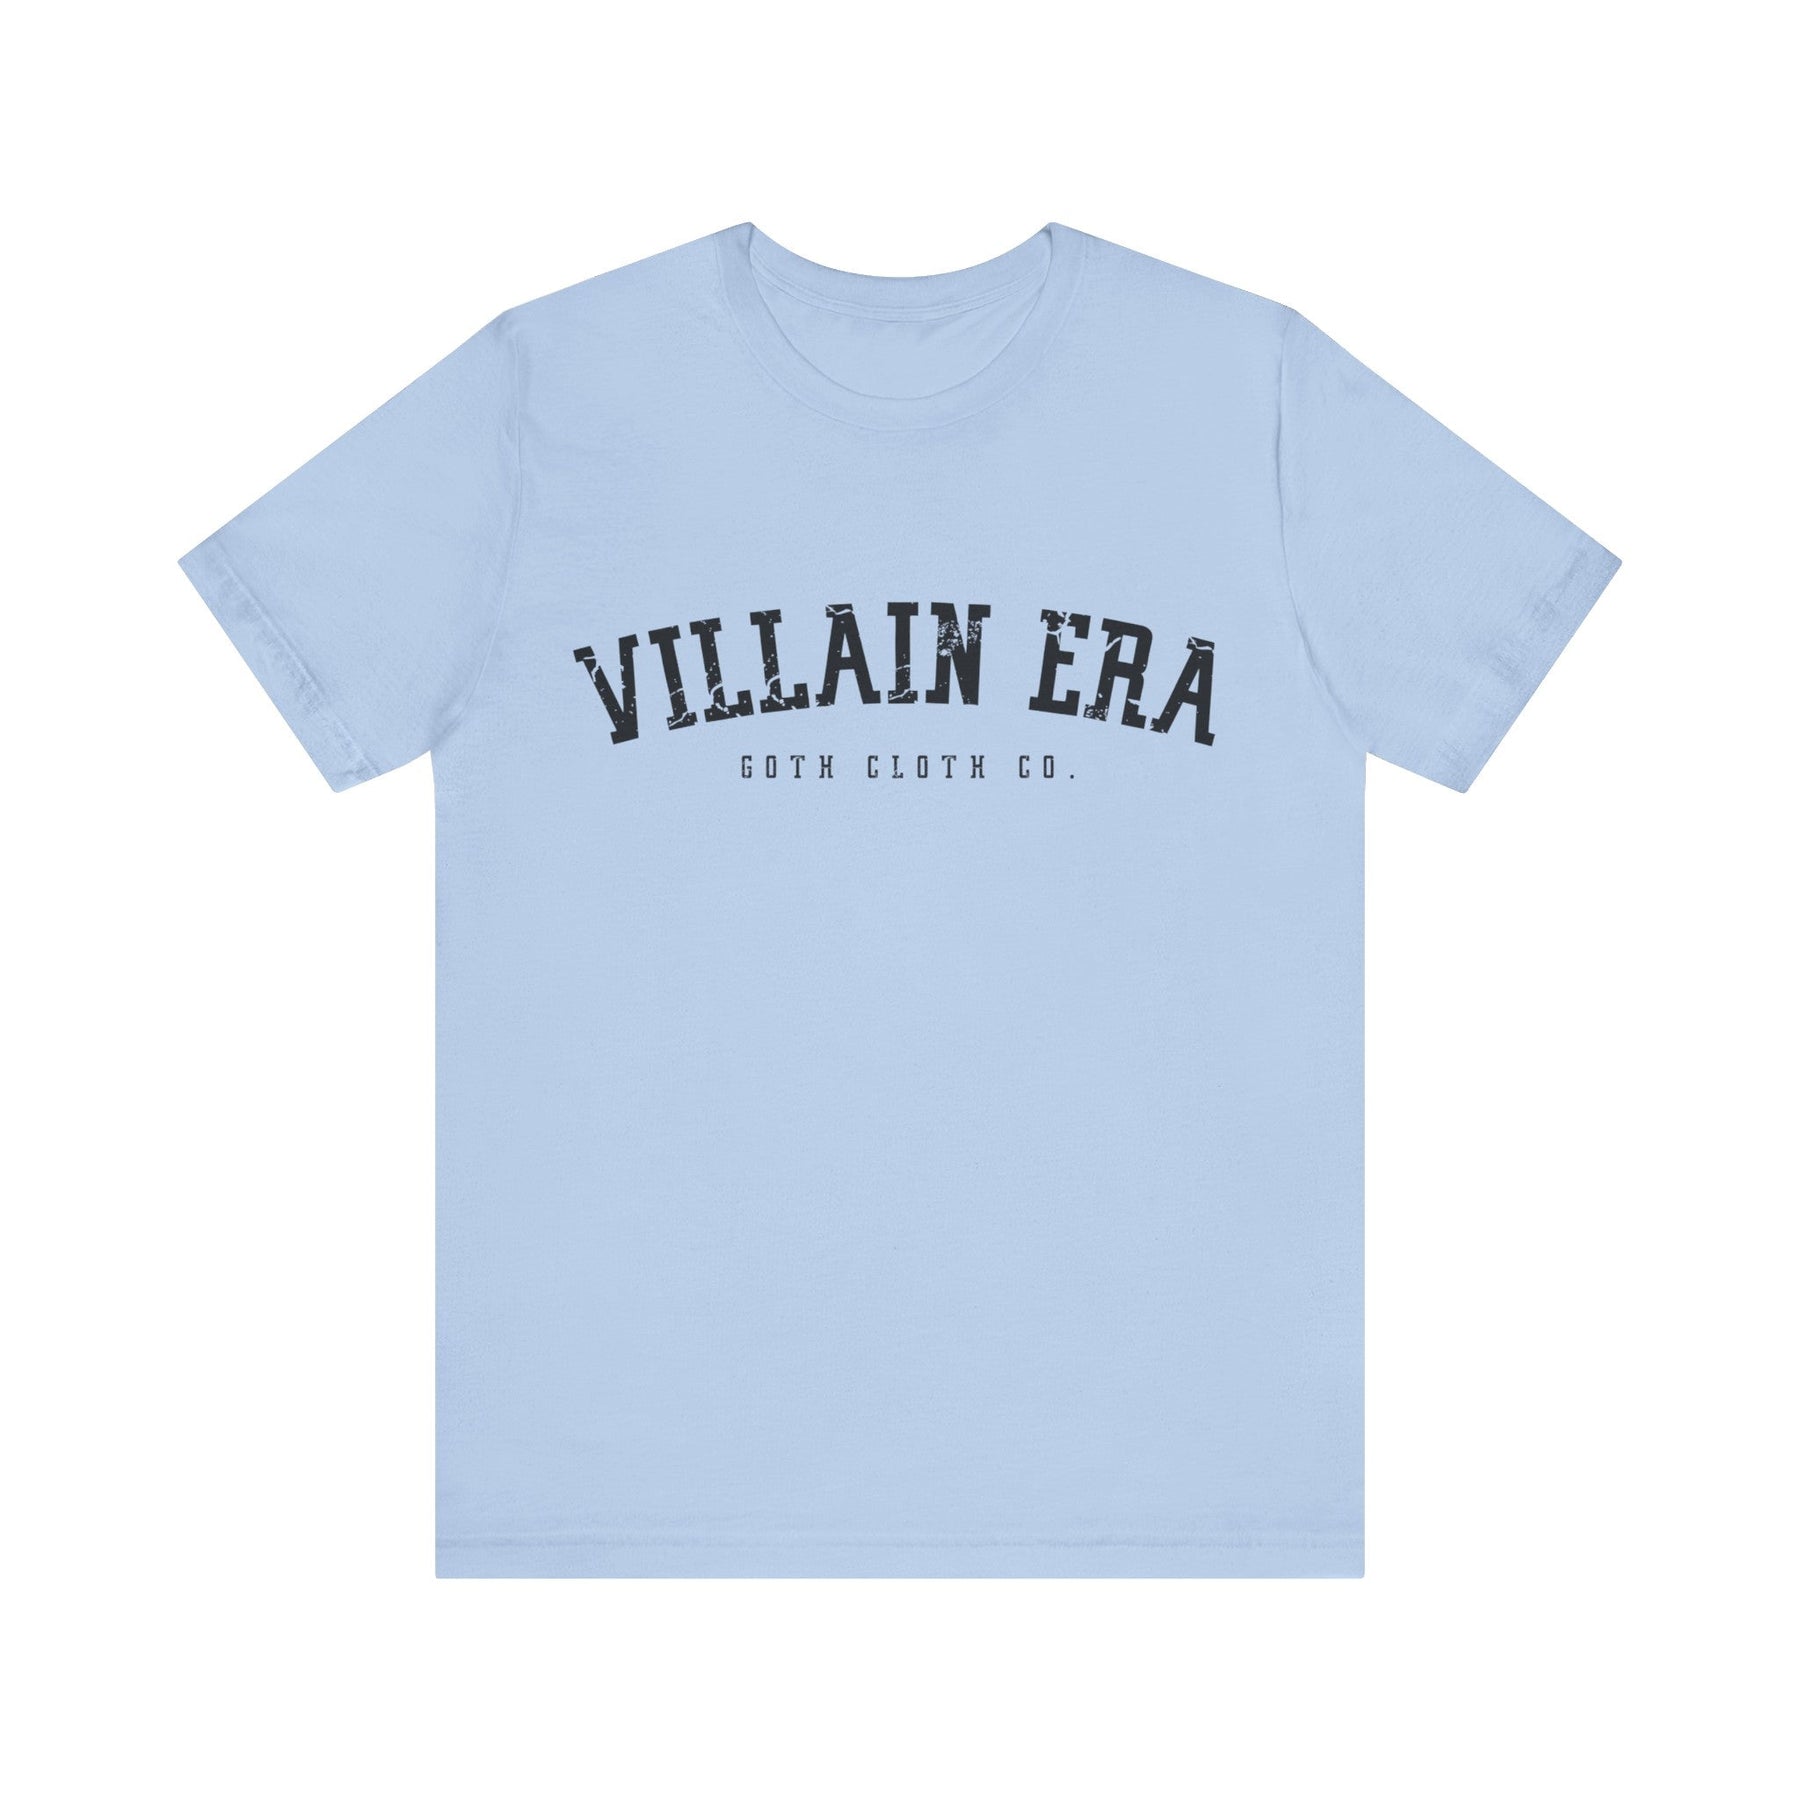 Villain Era Short Sleeve Tee - Goth Cloth Co.T - Shirt79825882893892551288